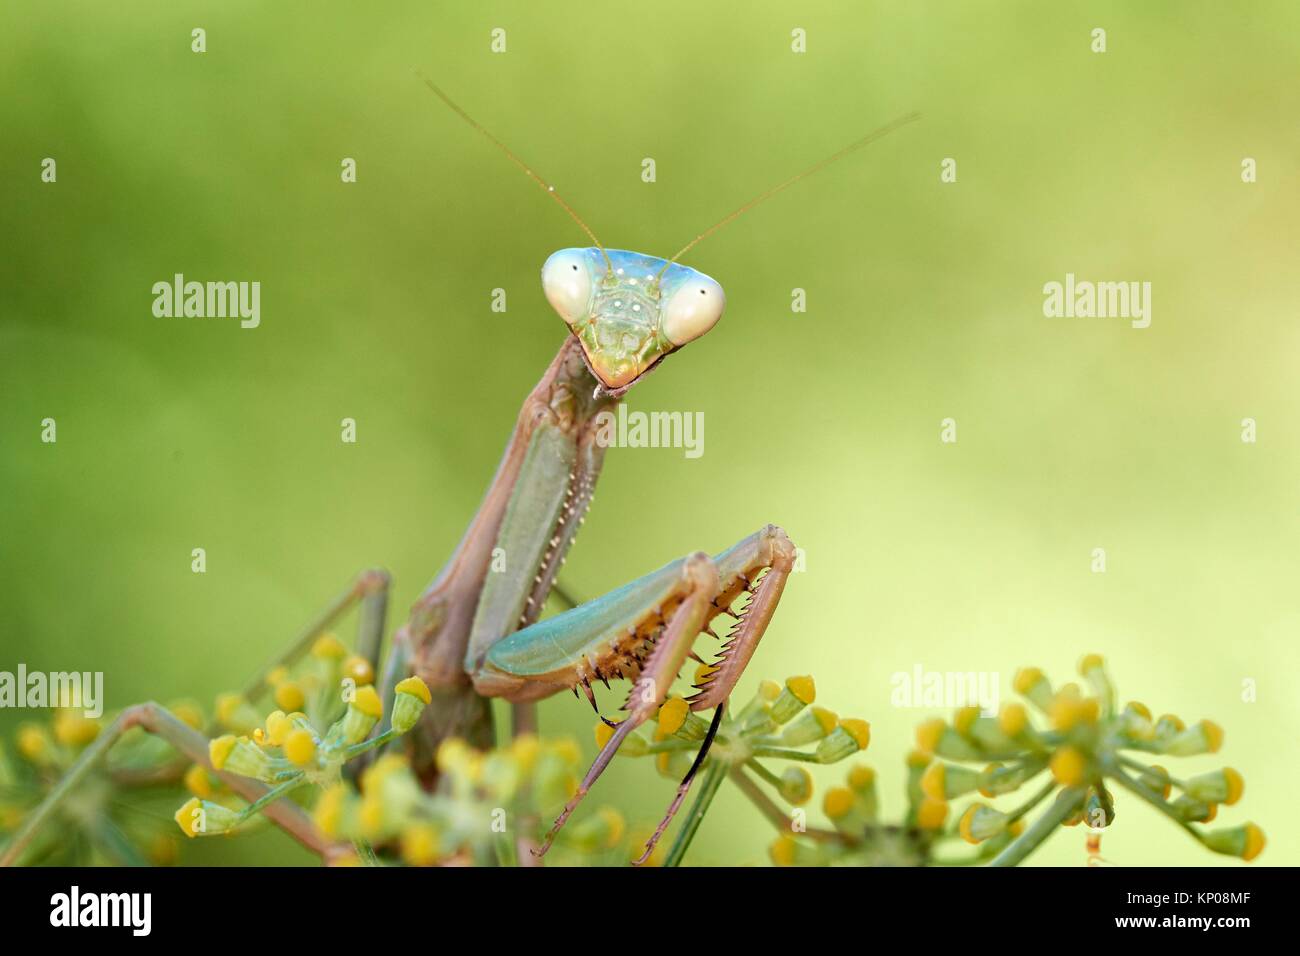 European Mantis or praying mantis (Mantis religiosa), Benalmadena, Malaga province, Andalusia, Spain. Stock Photo